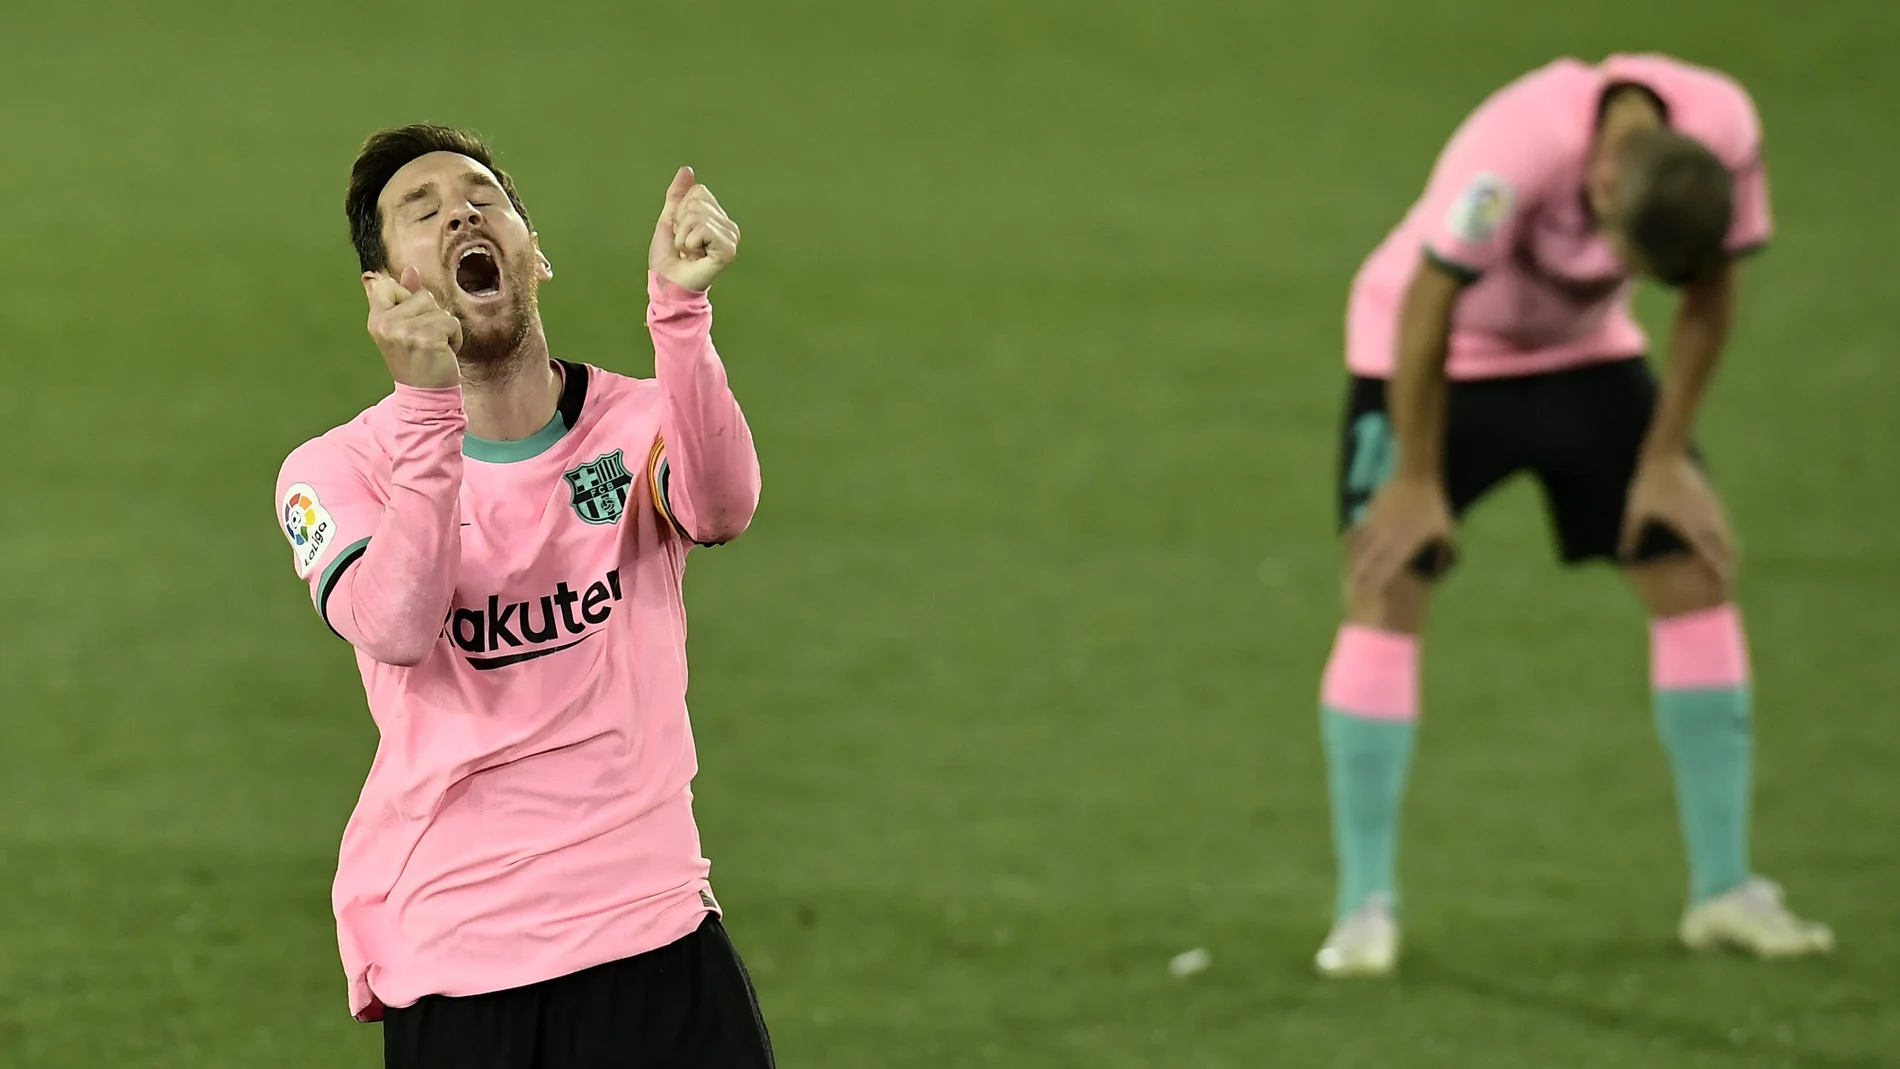 La rabia de Messi ha estallado contra el árbitro